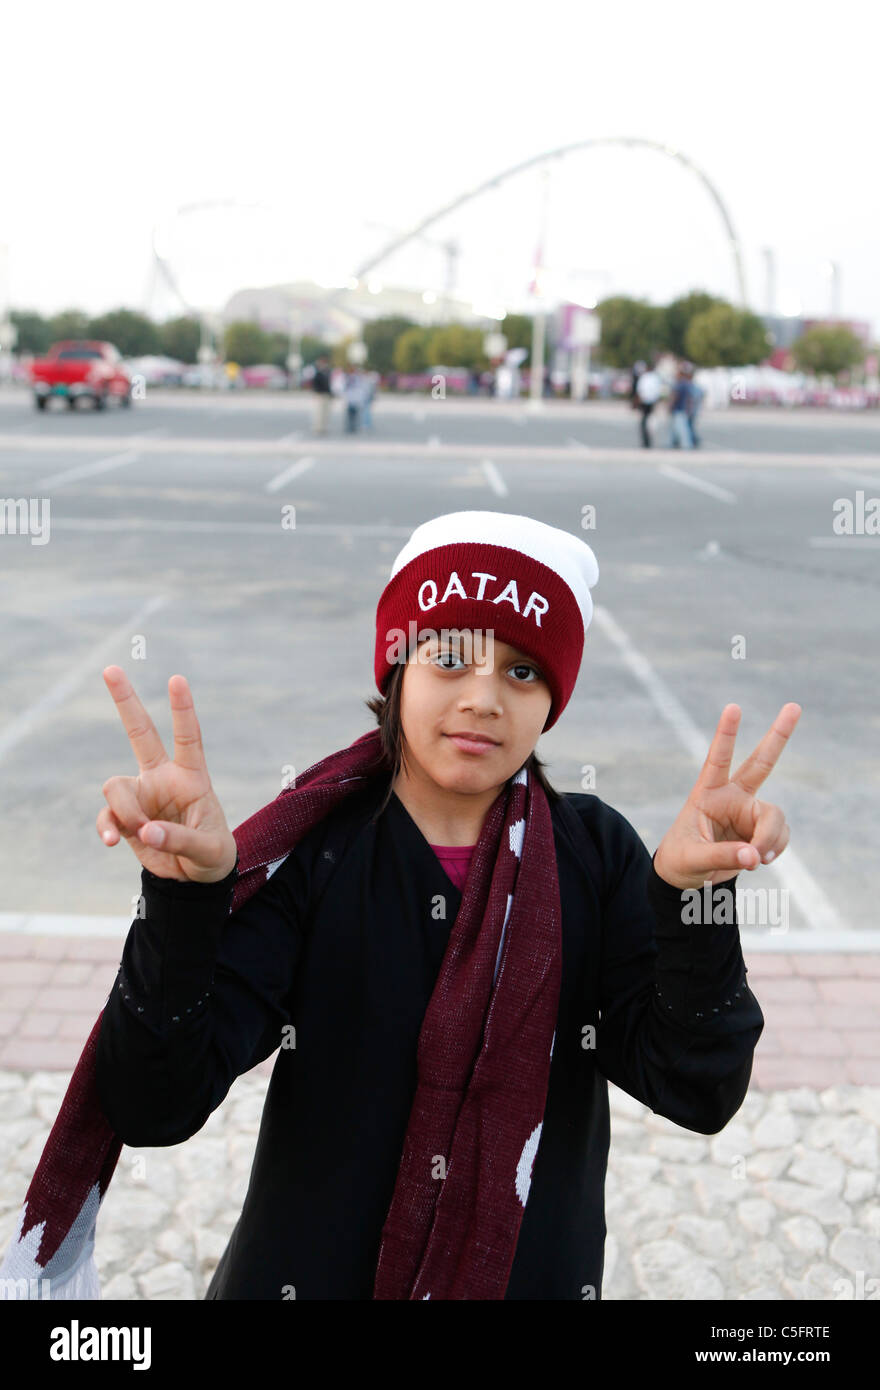 Qatar giovane tifoso di calcio sul suo modo Al Khalifa International Stadium Foto Stock